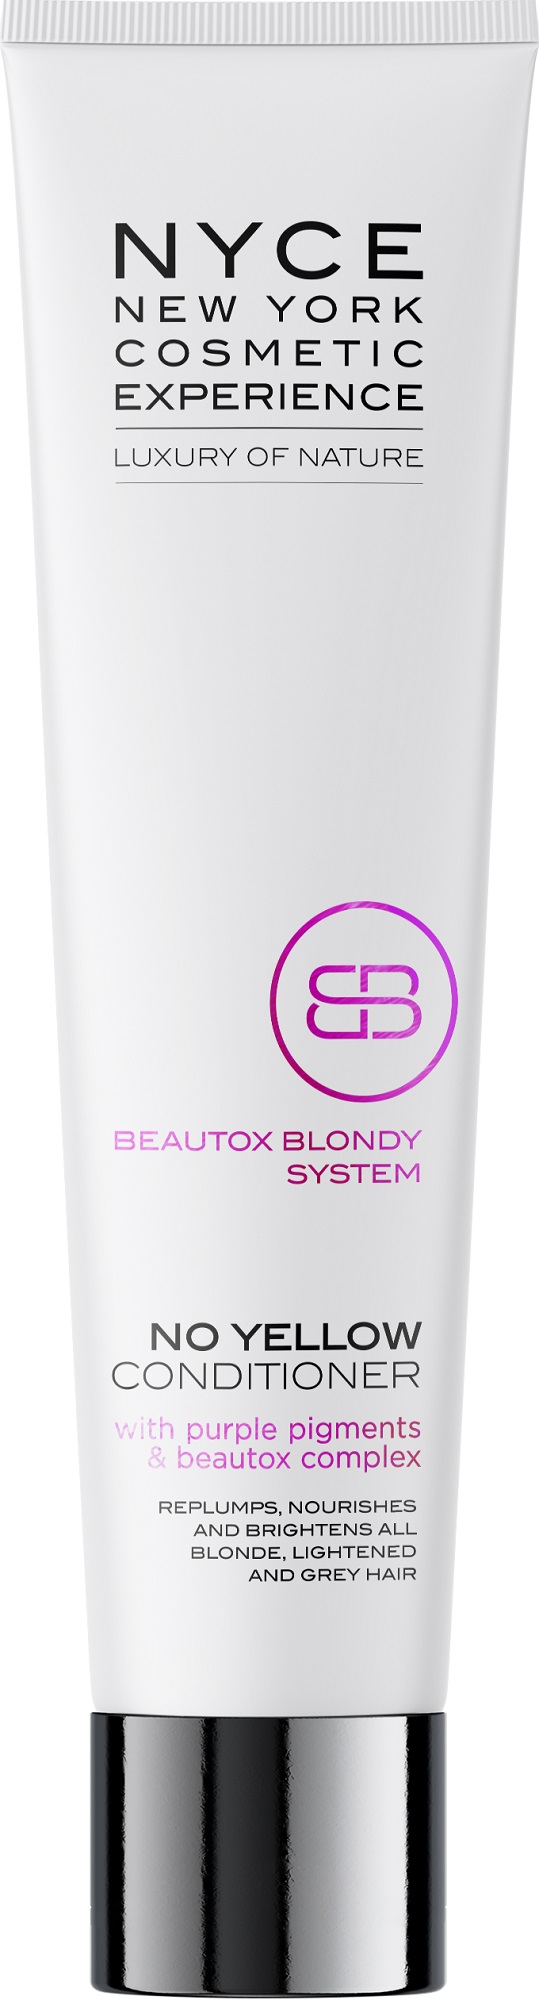 Zobrazit detail výrobku NYCE Kondicionér pro blond vlasy Beautox Blondy System (No Yellow Conditioner) 200 ml